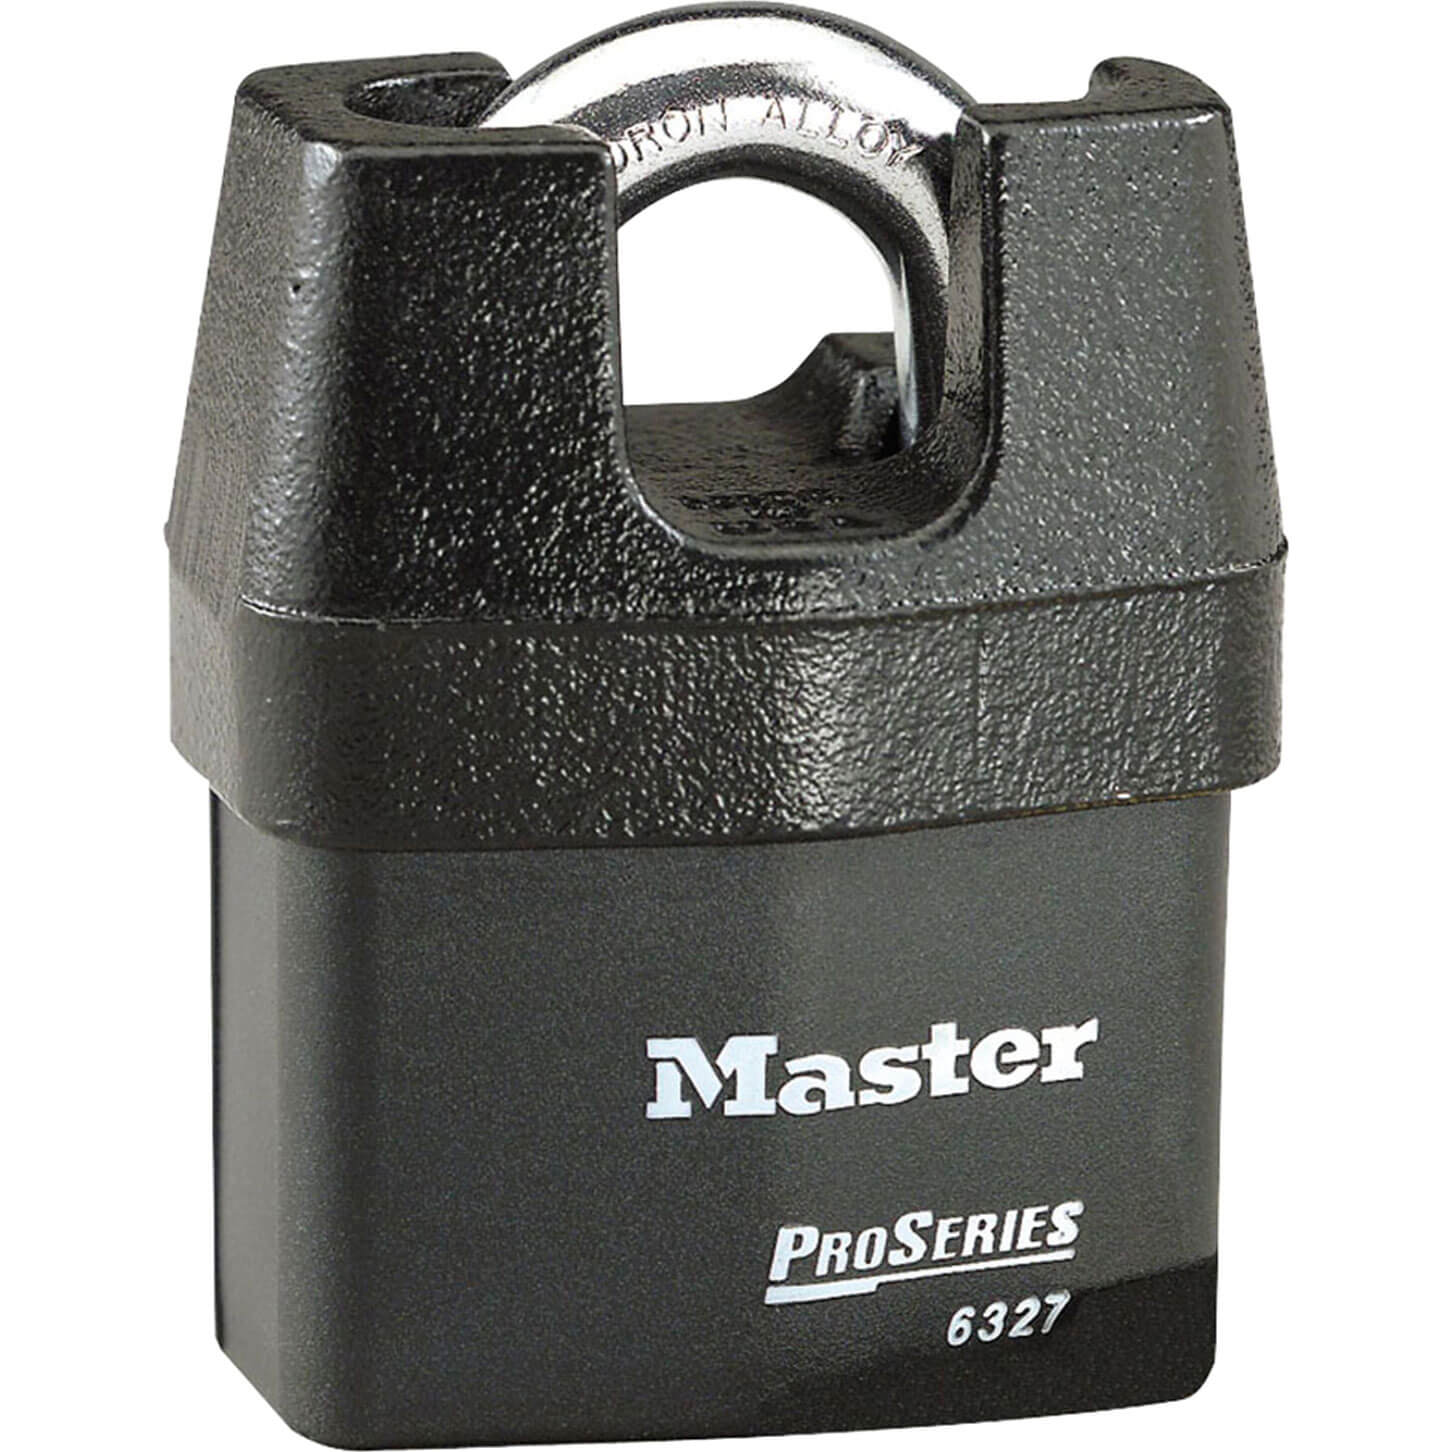 Image of Masterlock Pro Series Padlock Closed Shackle Keyed Alike 67mm Standard